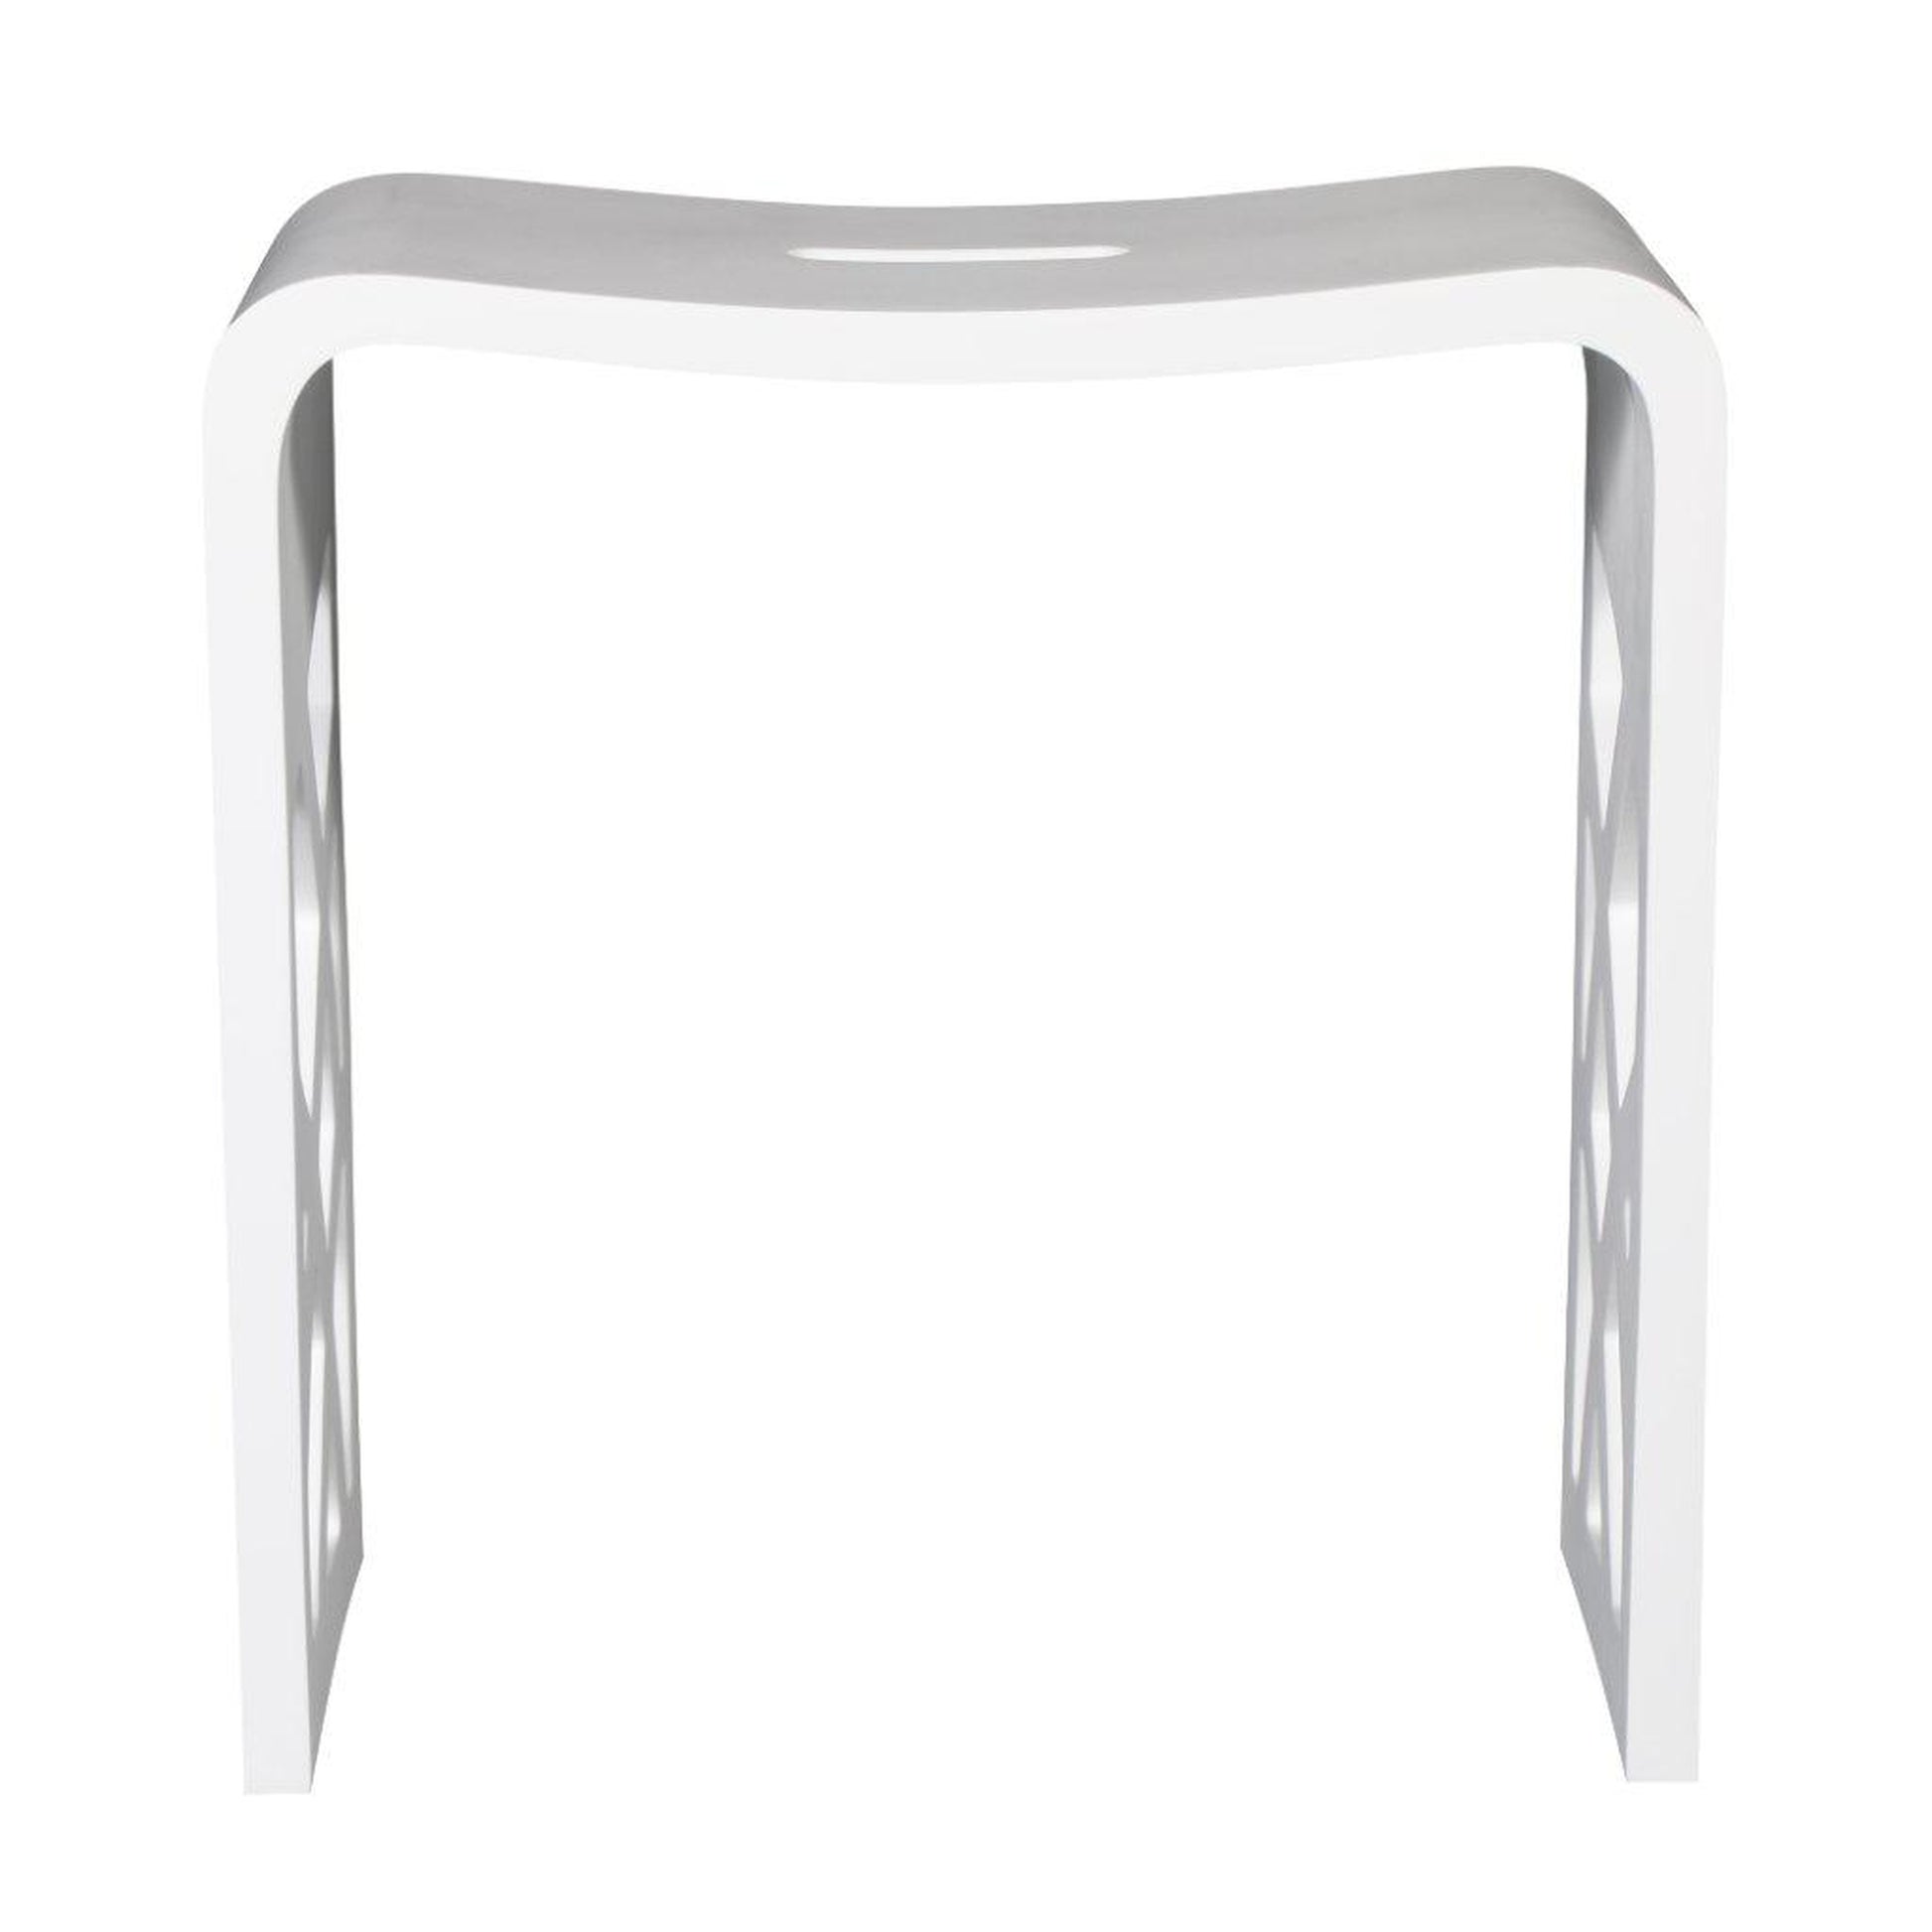 ALFI Brand ABST88 White Matte Designer Solid Surface Resin Bathroom/Shower Stool